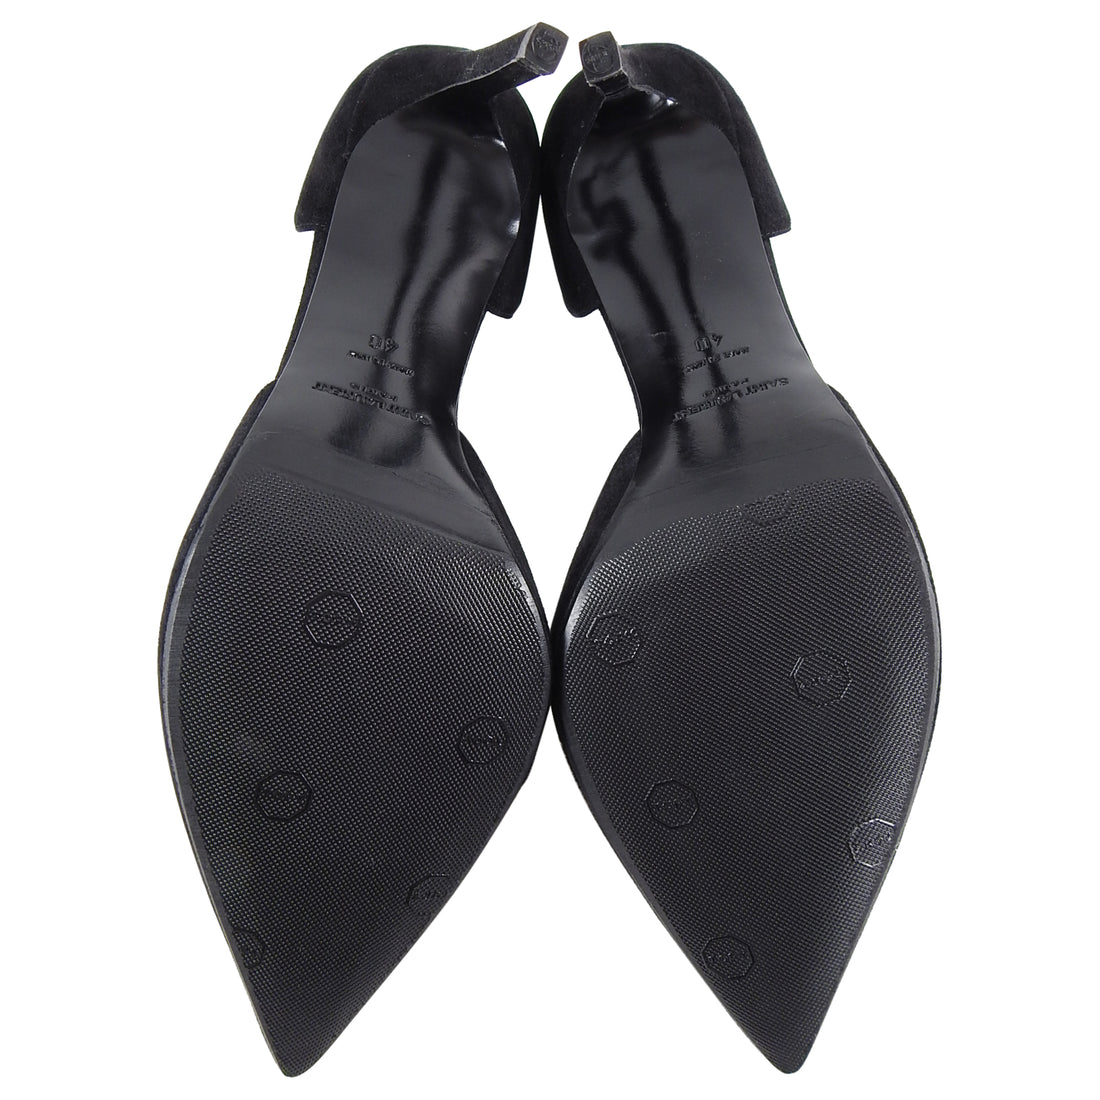 Saint Laurent Black Suede D’Orsay Heels Shoes - 40